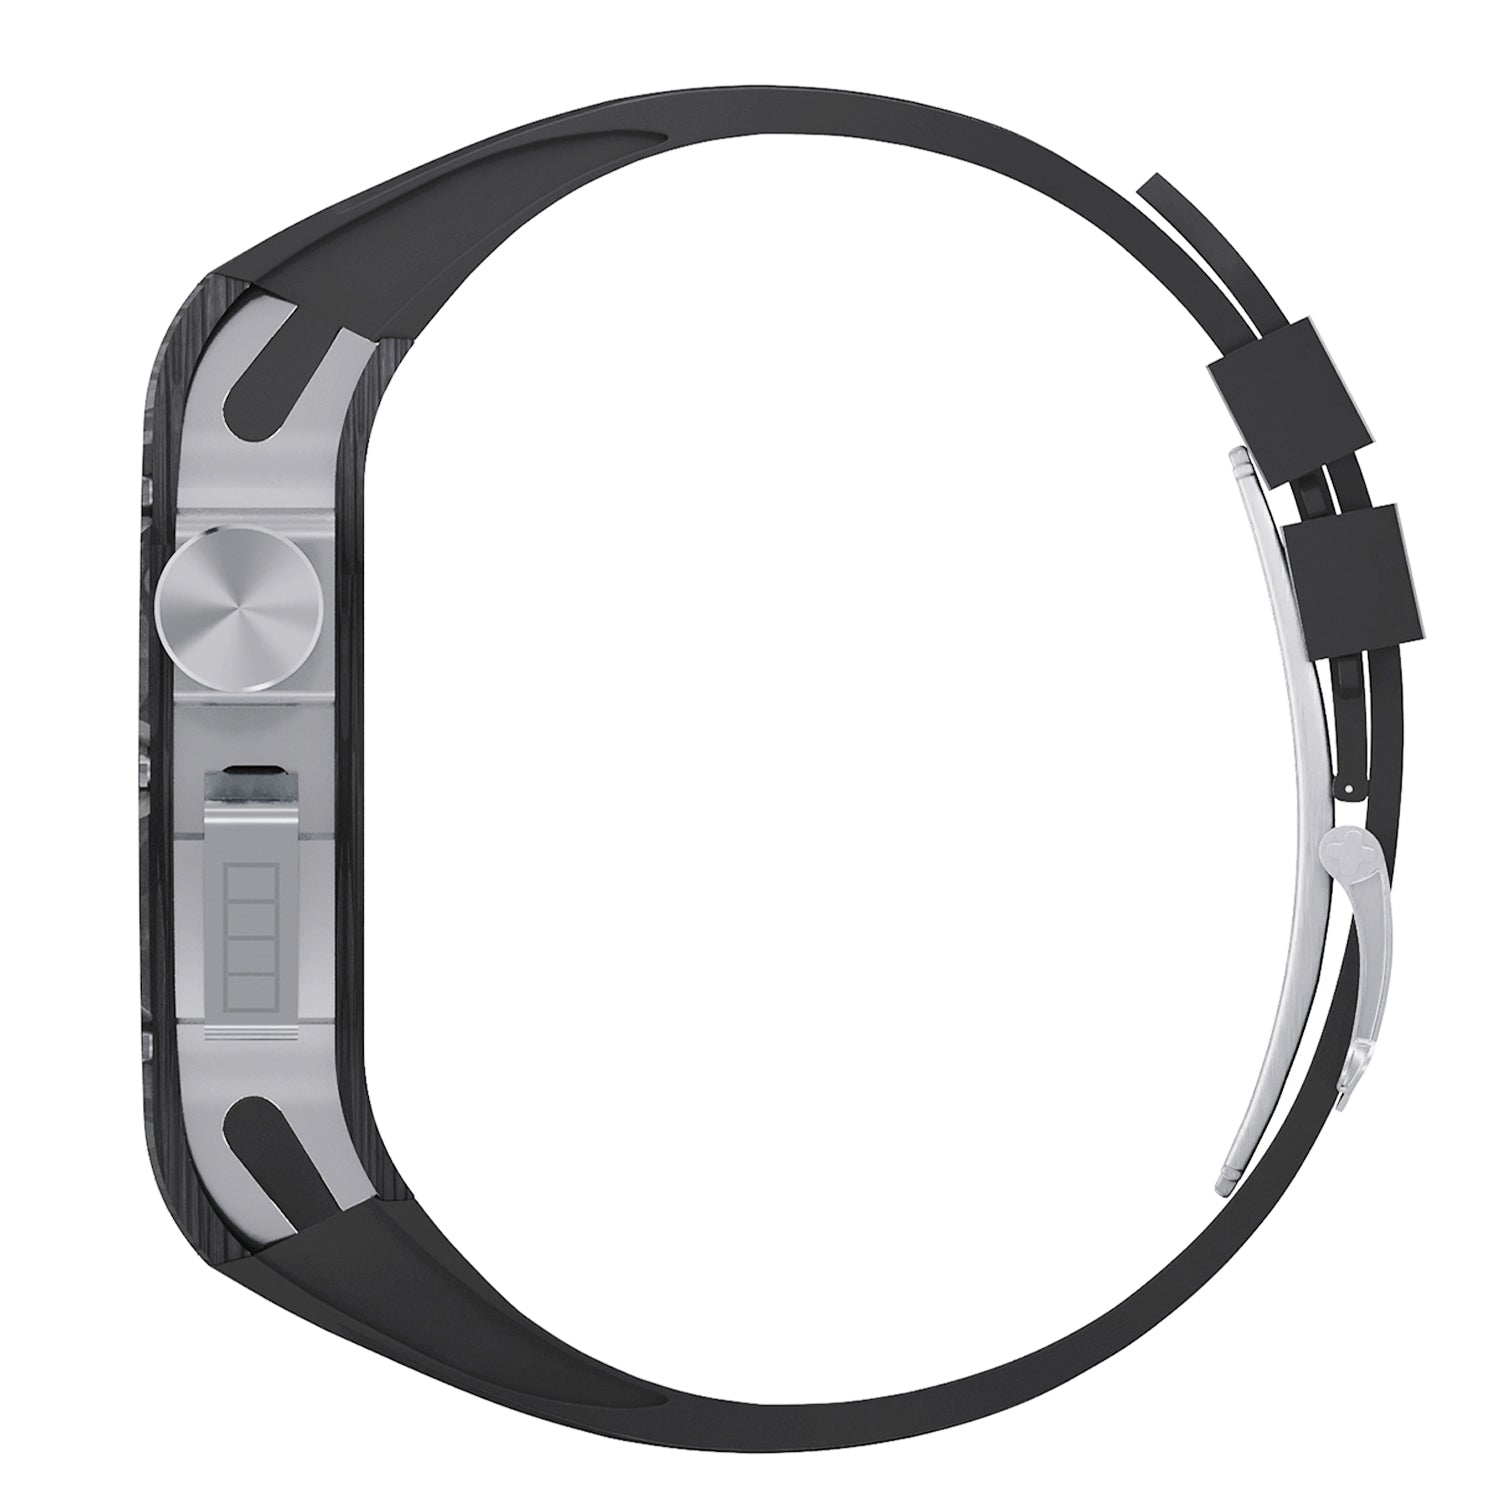 44 - 45mm Carbon Fibre Case For Apple Watch With Premium FKM Rubber Strap